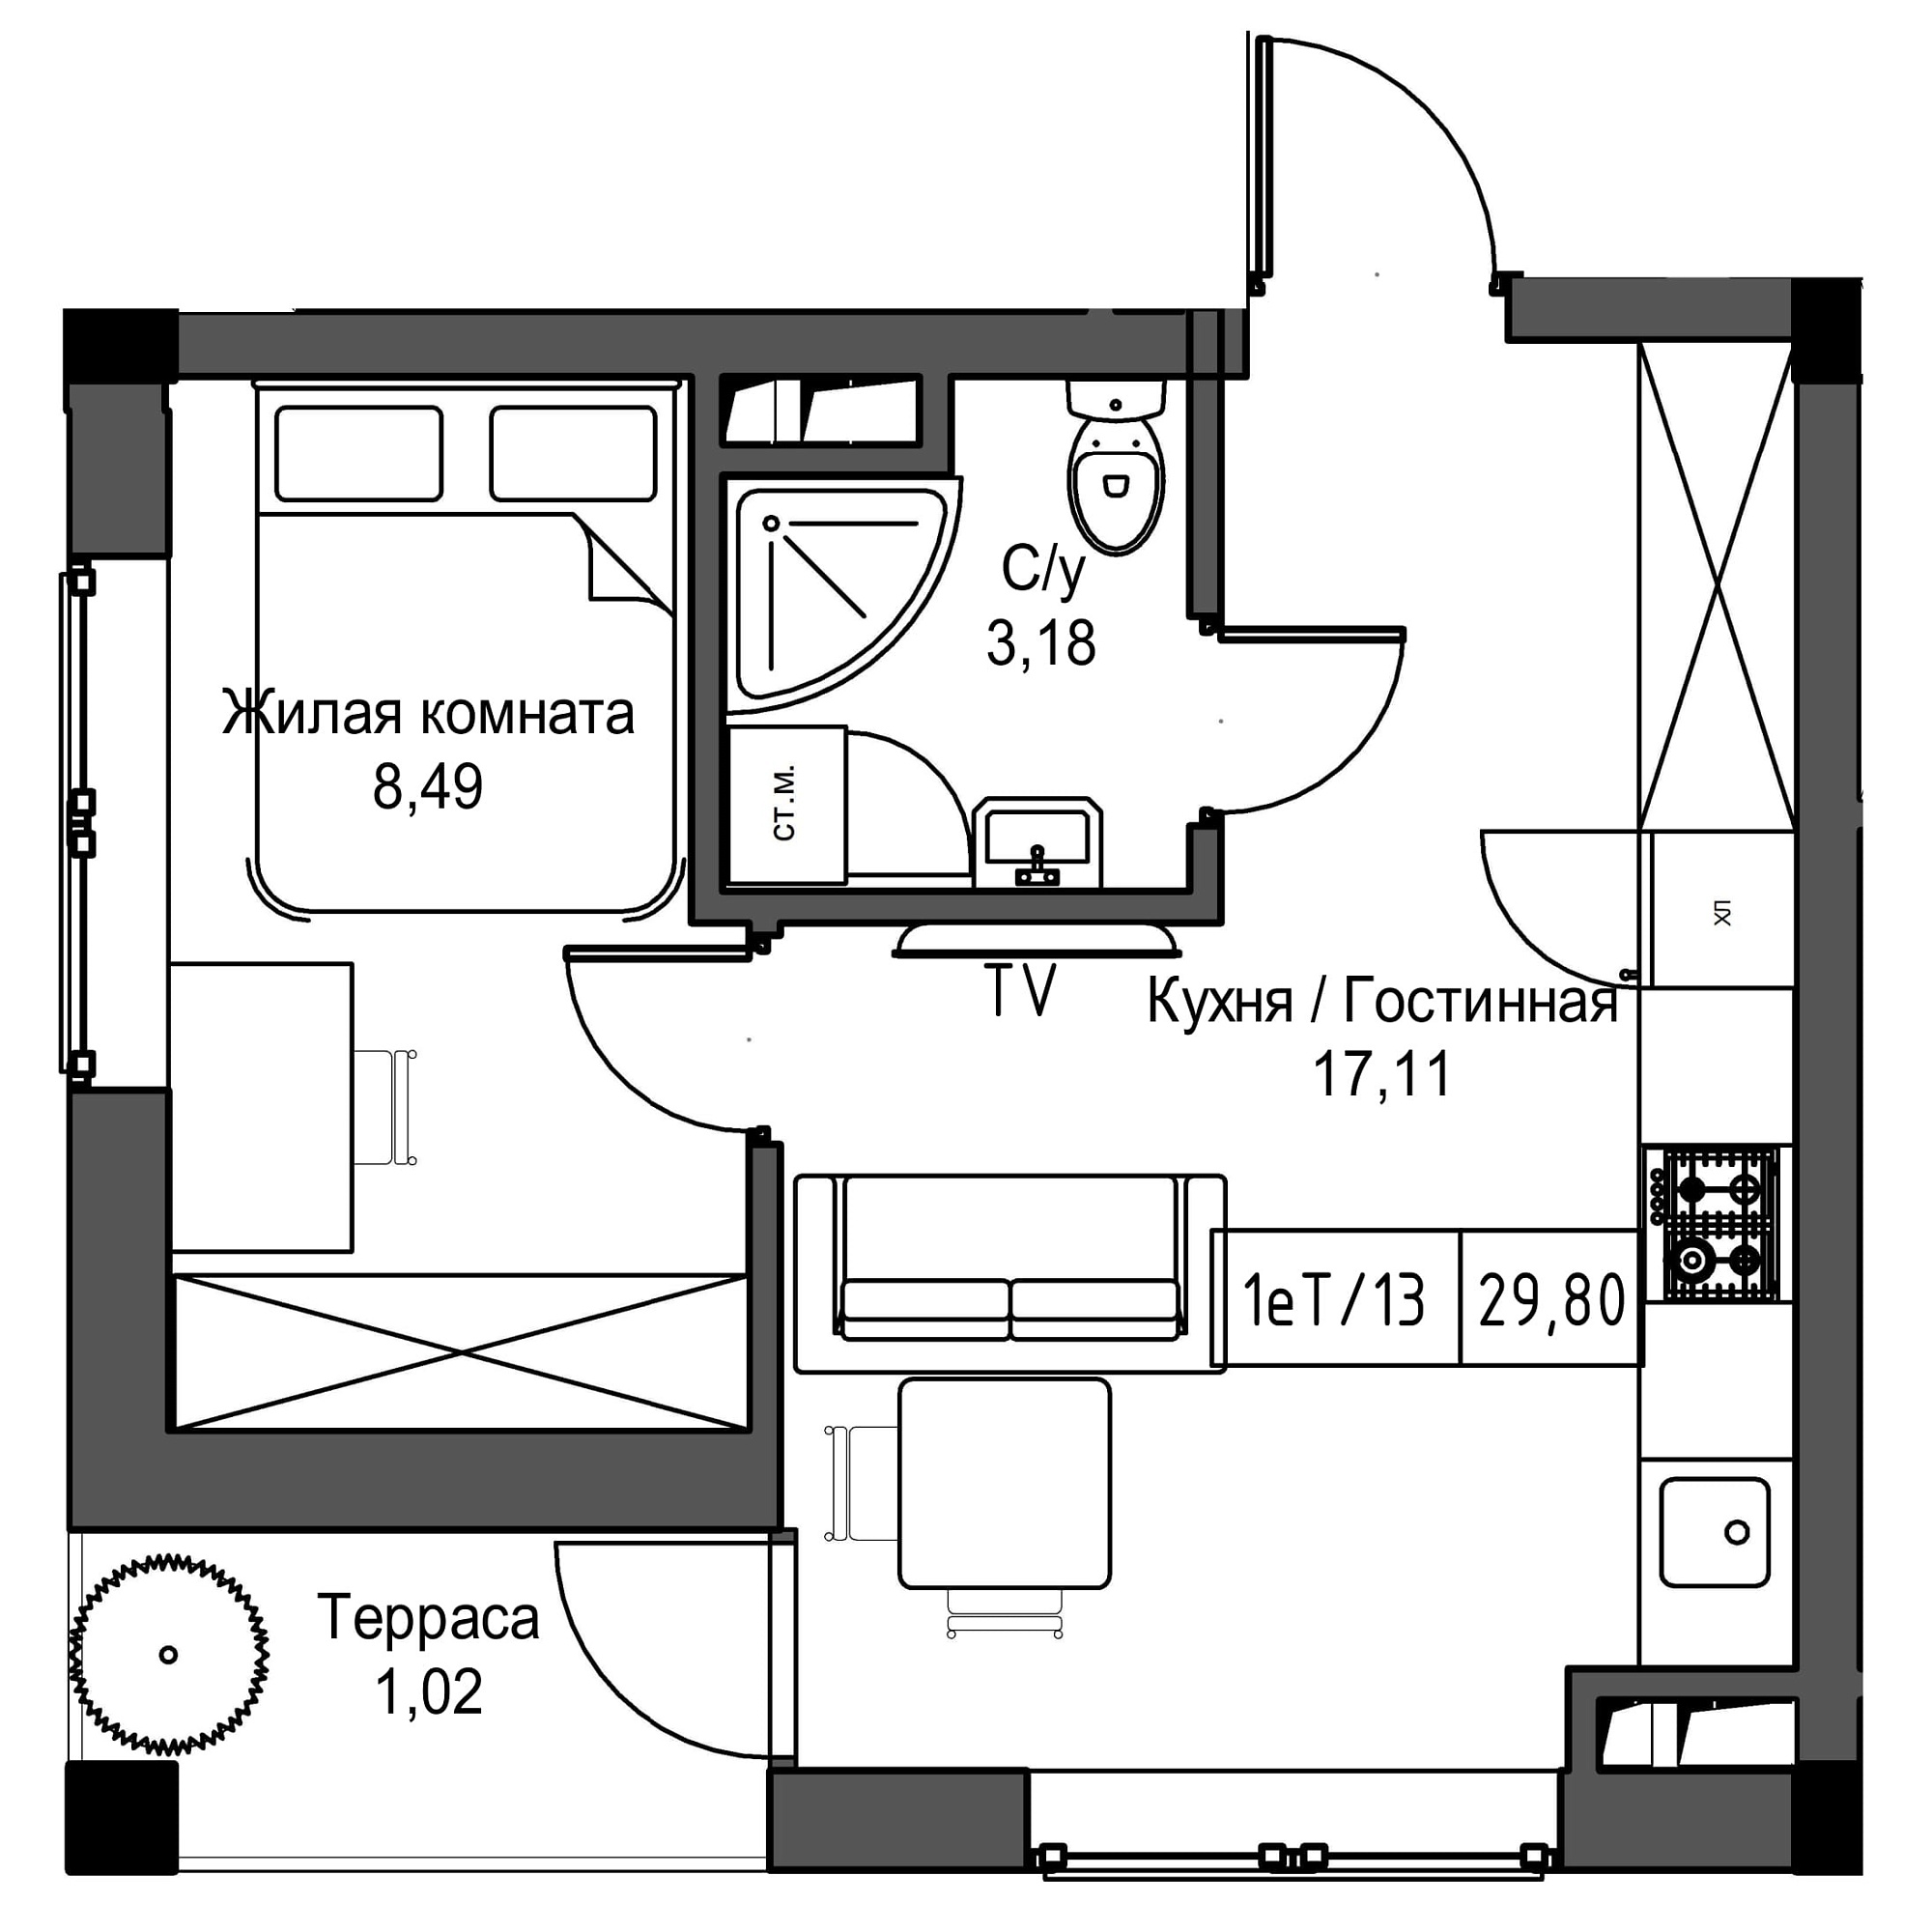 Планировка 1-к квартира площей 29.8м2, UM-002-09/0086.